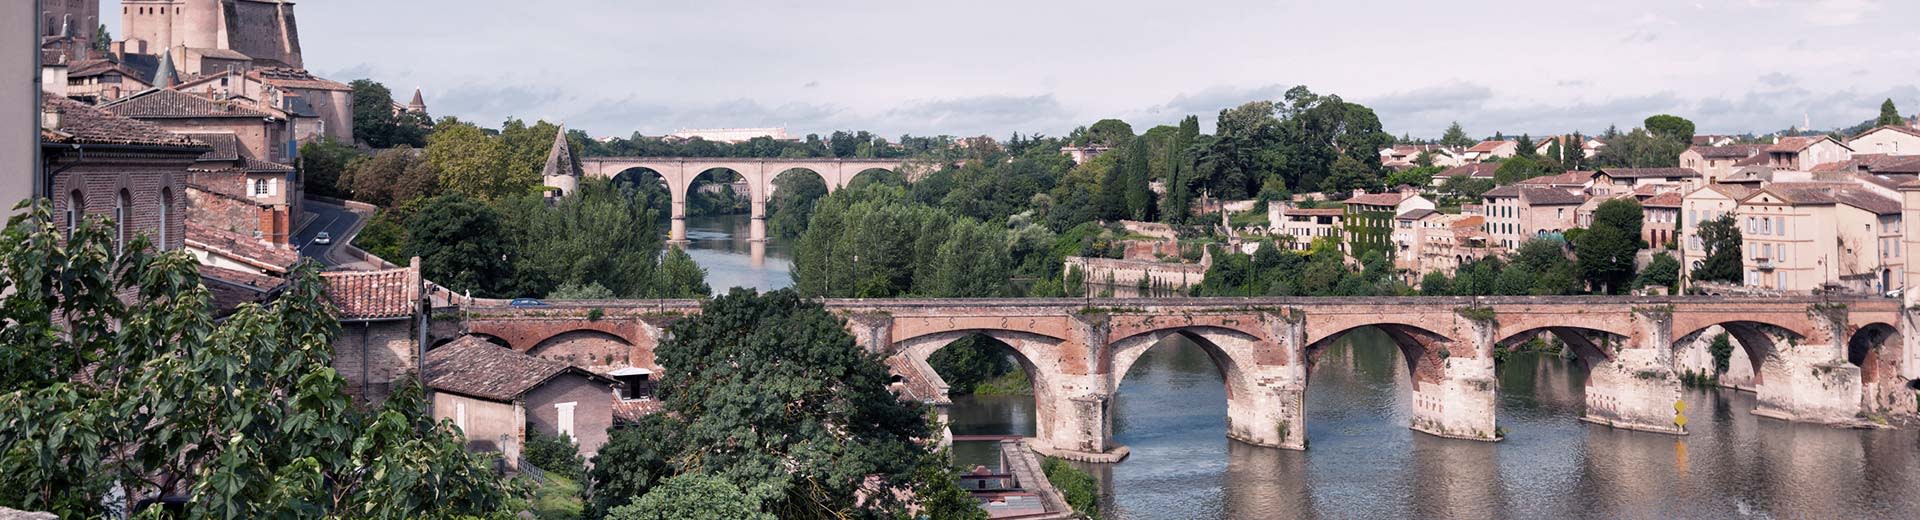 Sobre el río Garonne en Toulouse hay dos hermosos puentes, con muchos árboles y una arquitectura impresionante en cualquier banco